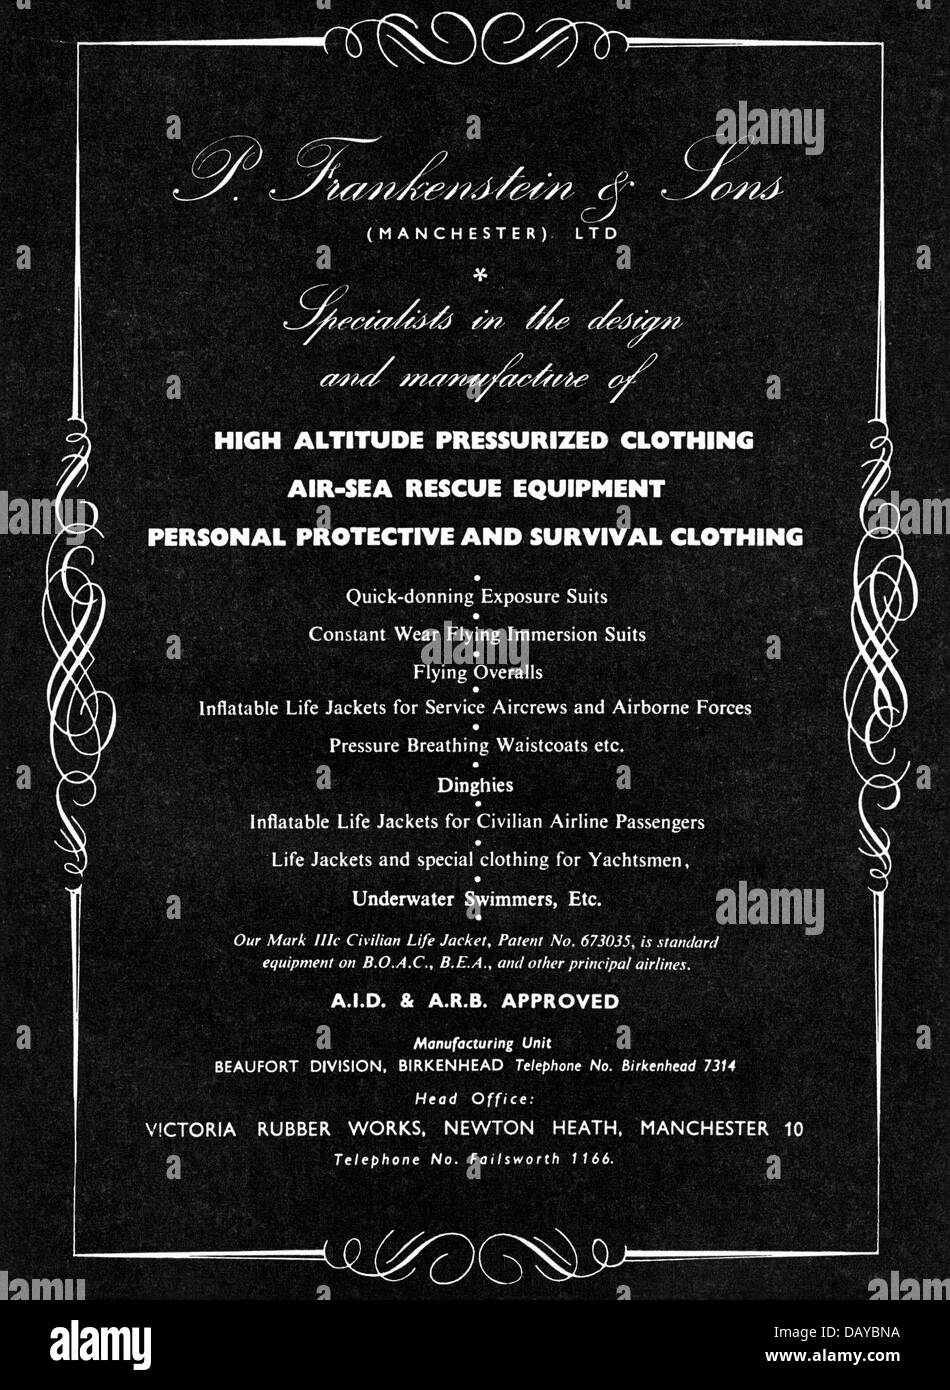 Anuncio para ropa por P. Frankenstein & Sons Ltd Manchester, Inglaterra a los la industria de la aviación anuncio en revista comercial circa 1955 Fotografía de - Alamy